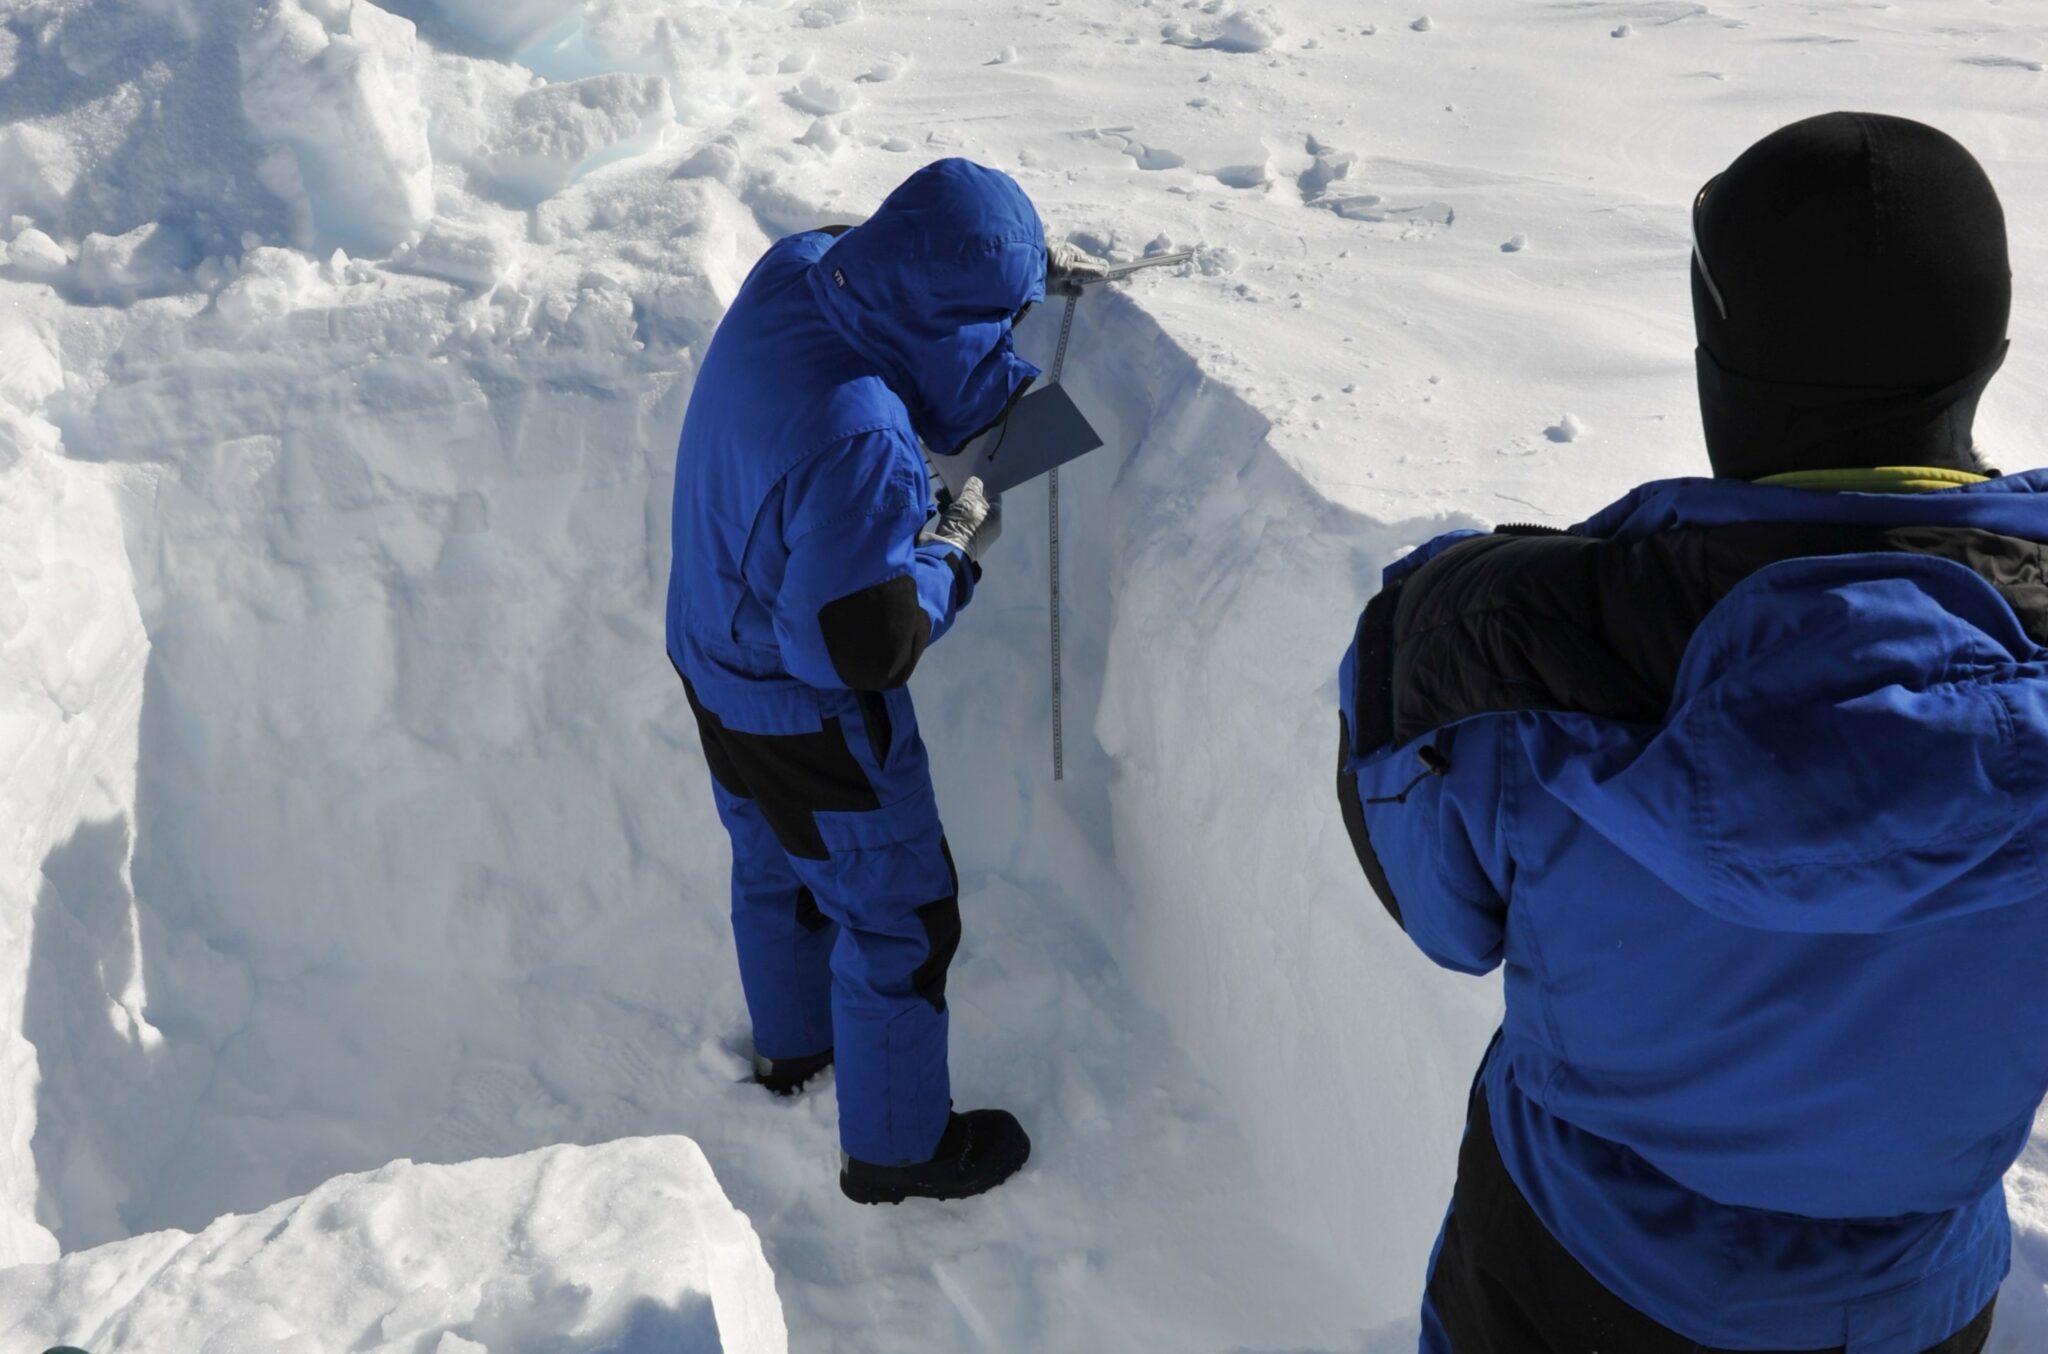 L'équipe a creusé un trou dans la neige pour pouvoir récupérer des échantillons de neige. Ils s'assurent que l'endroit choisi n'a jamais été piétiné par quiconque.